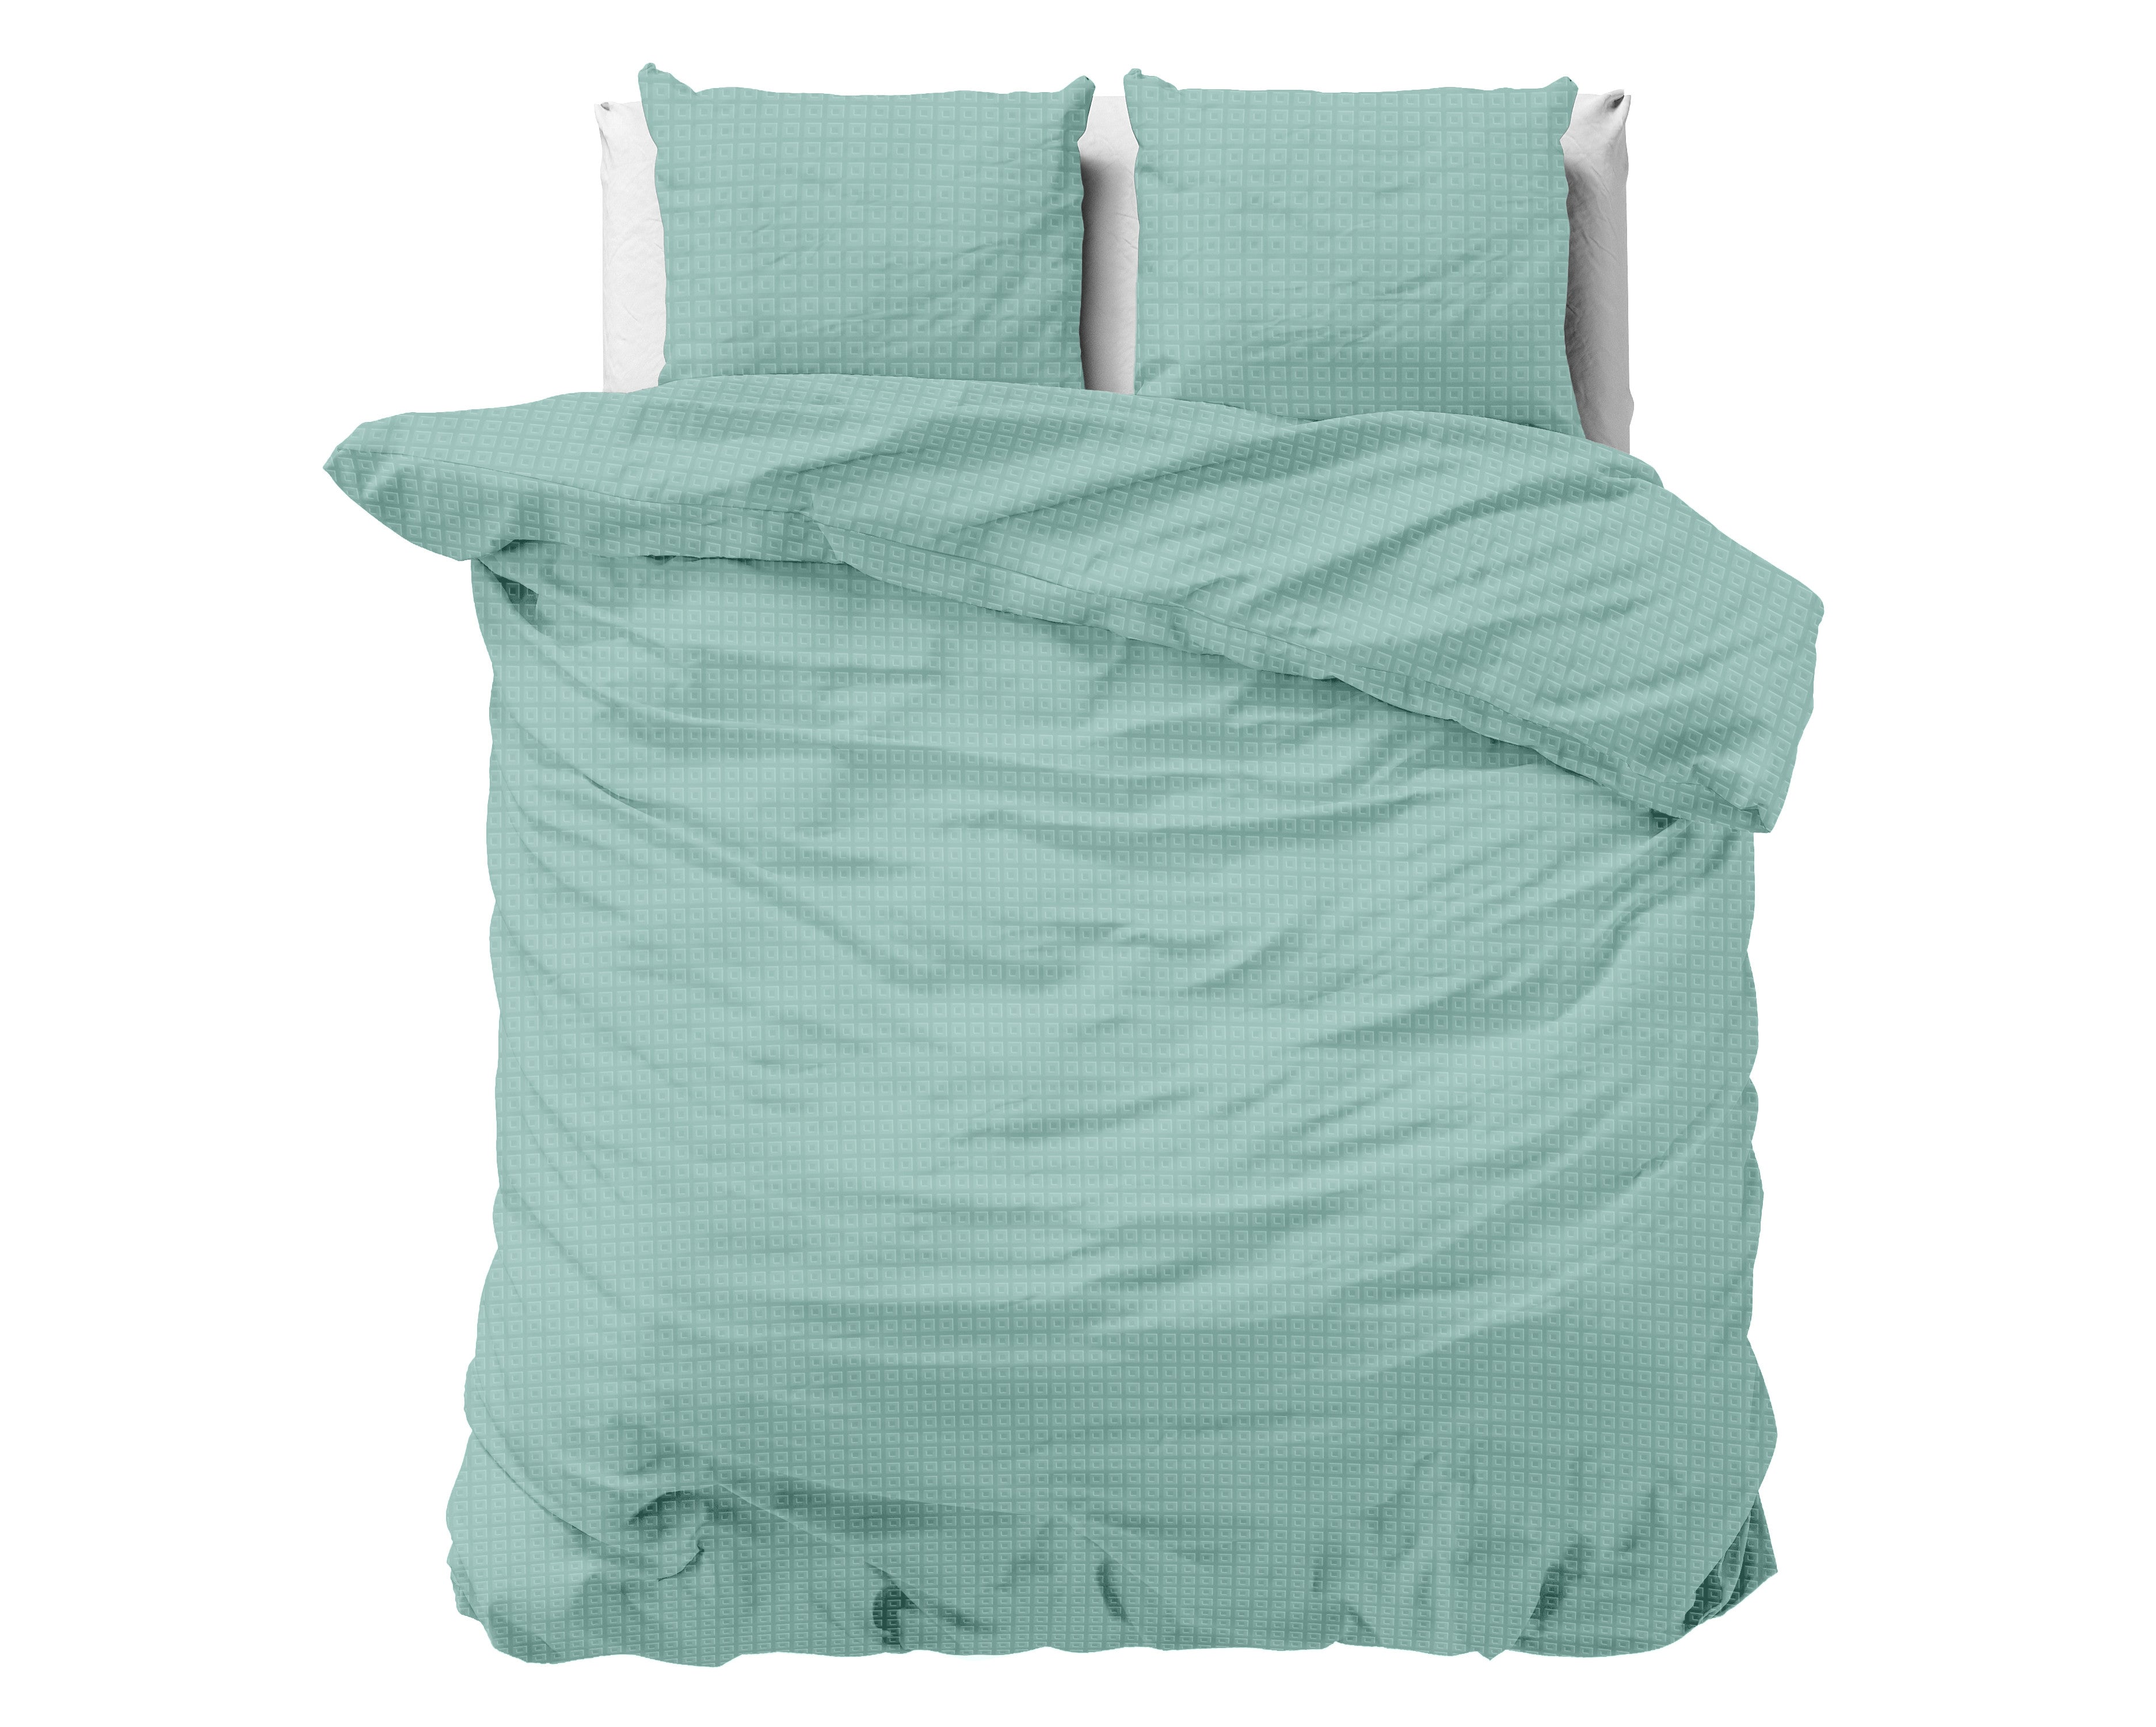 Billede af Axel sengesæt, Mint grøn 200 x 220 cm